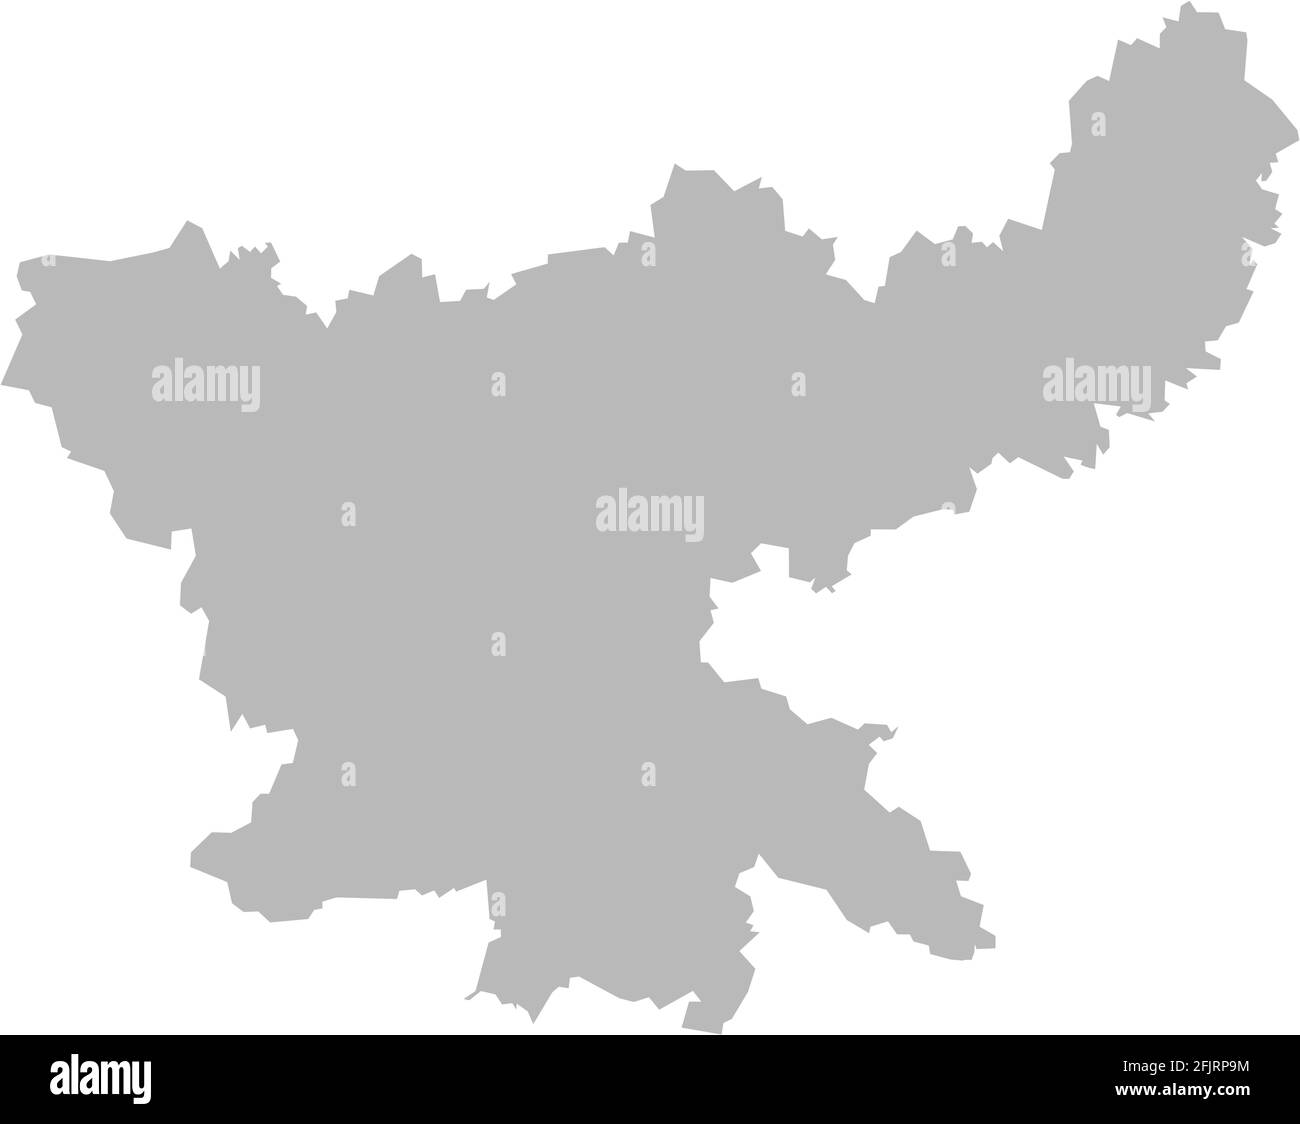 Mappa dello stato indiano di Jharkhand. Sfondo grigio chiaro. Progettazione grafica dei concetti aziendali. Illustrazione Vettoriale